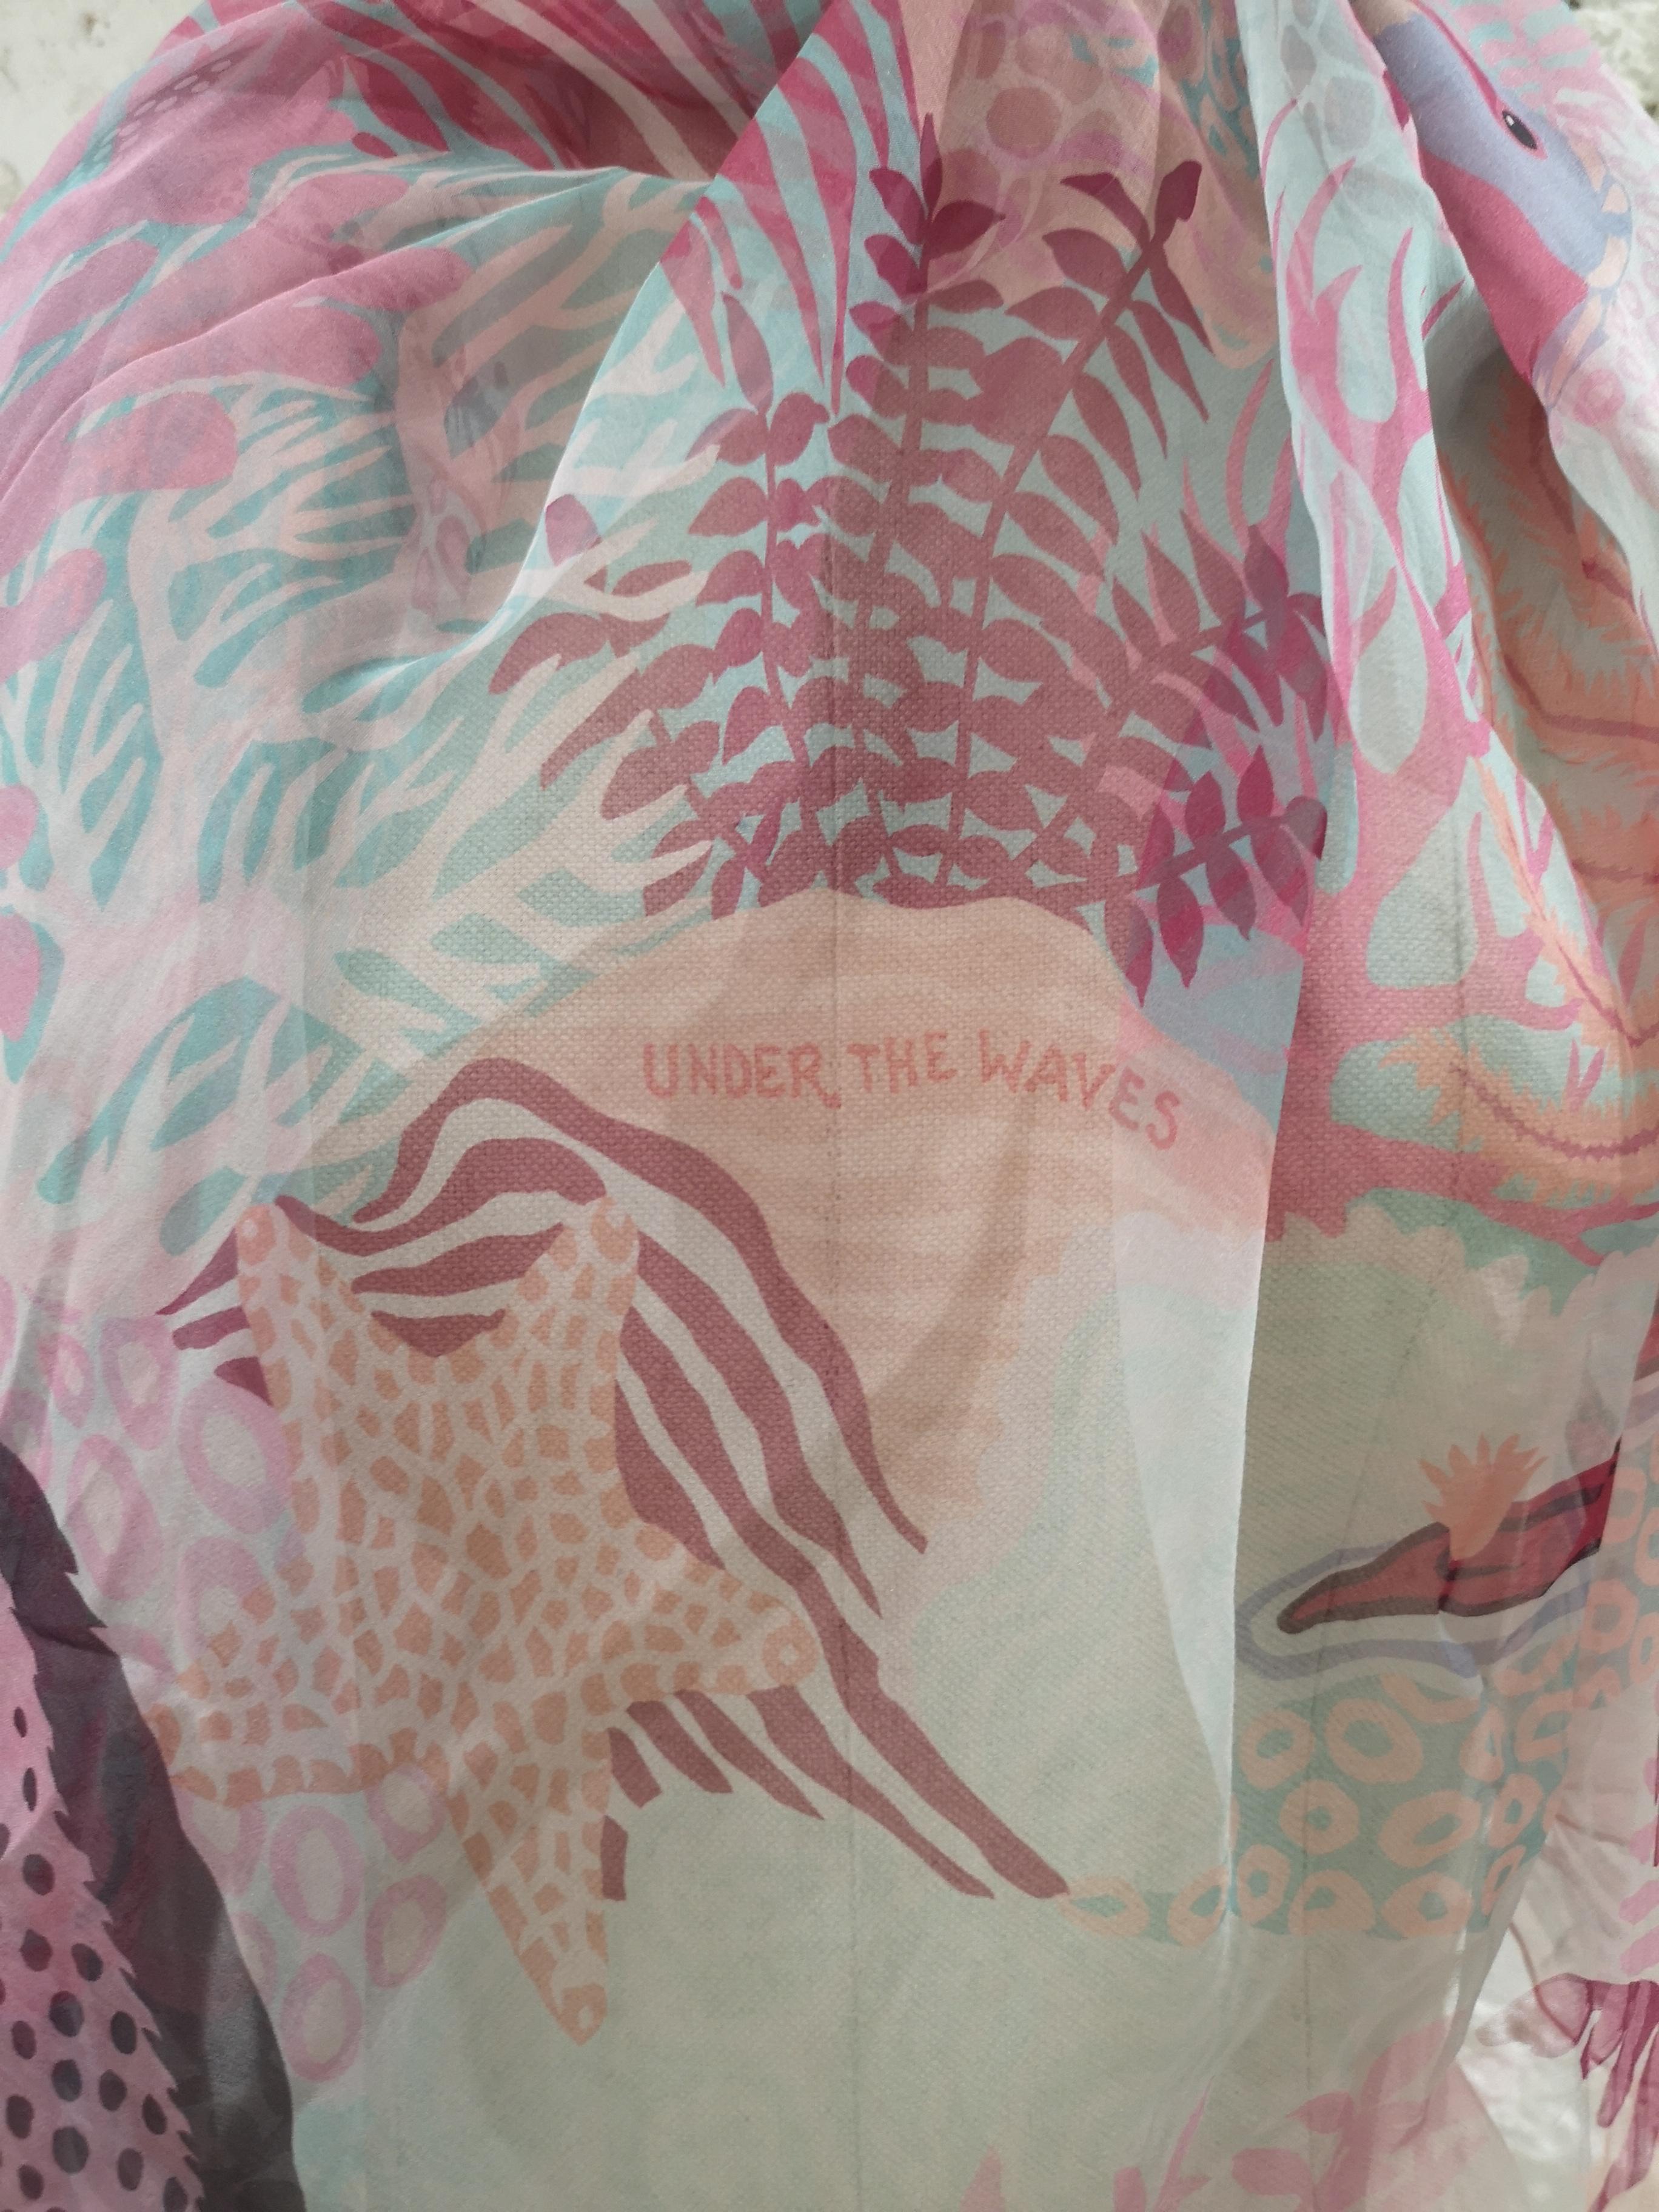 Hermès Under the Waves Silk Scarf , shawl  3